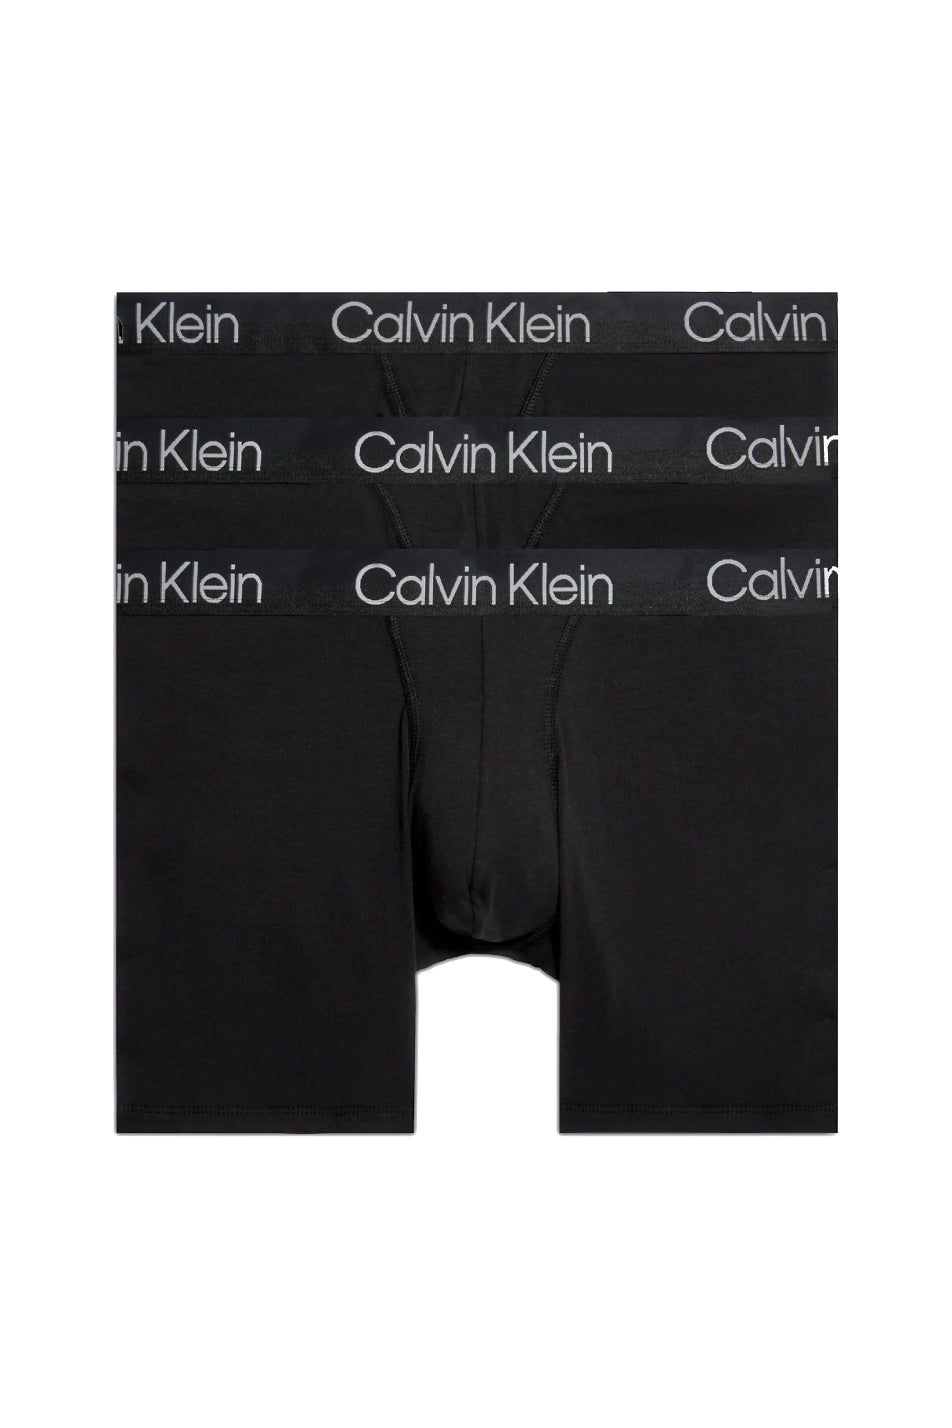 Calvin Klein 3 Pack Men's Modern Structure Boxer Brief